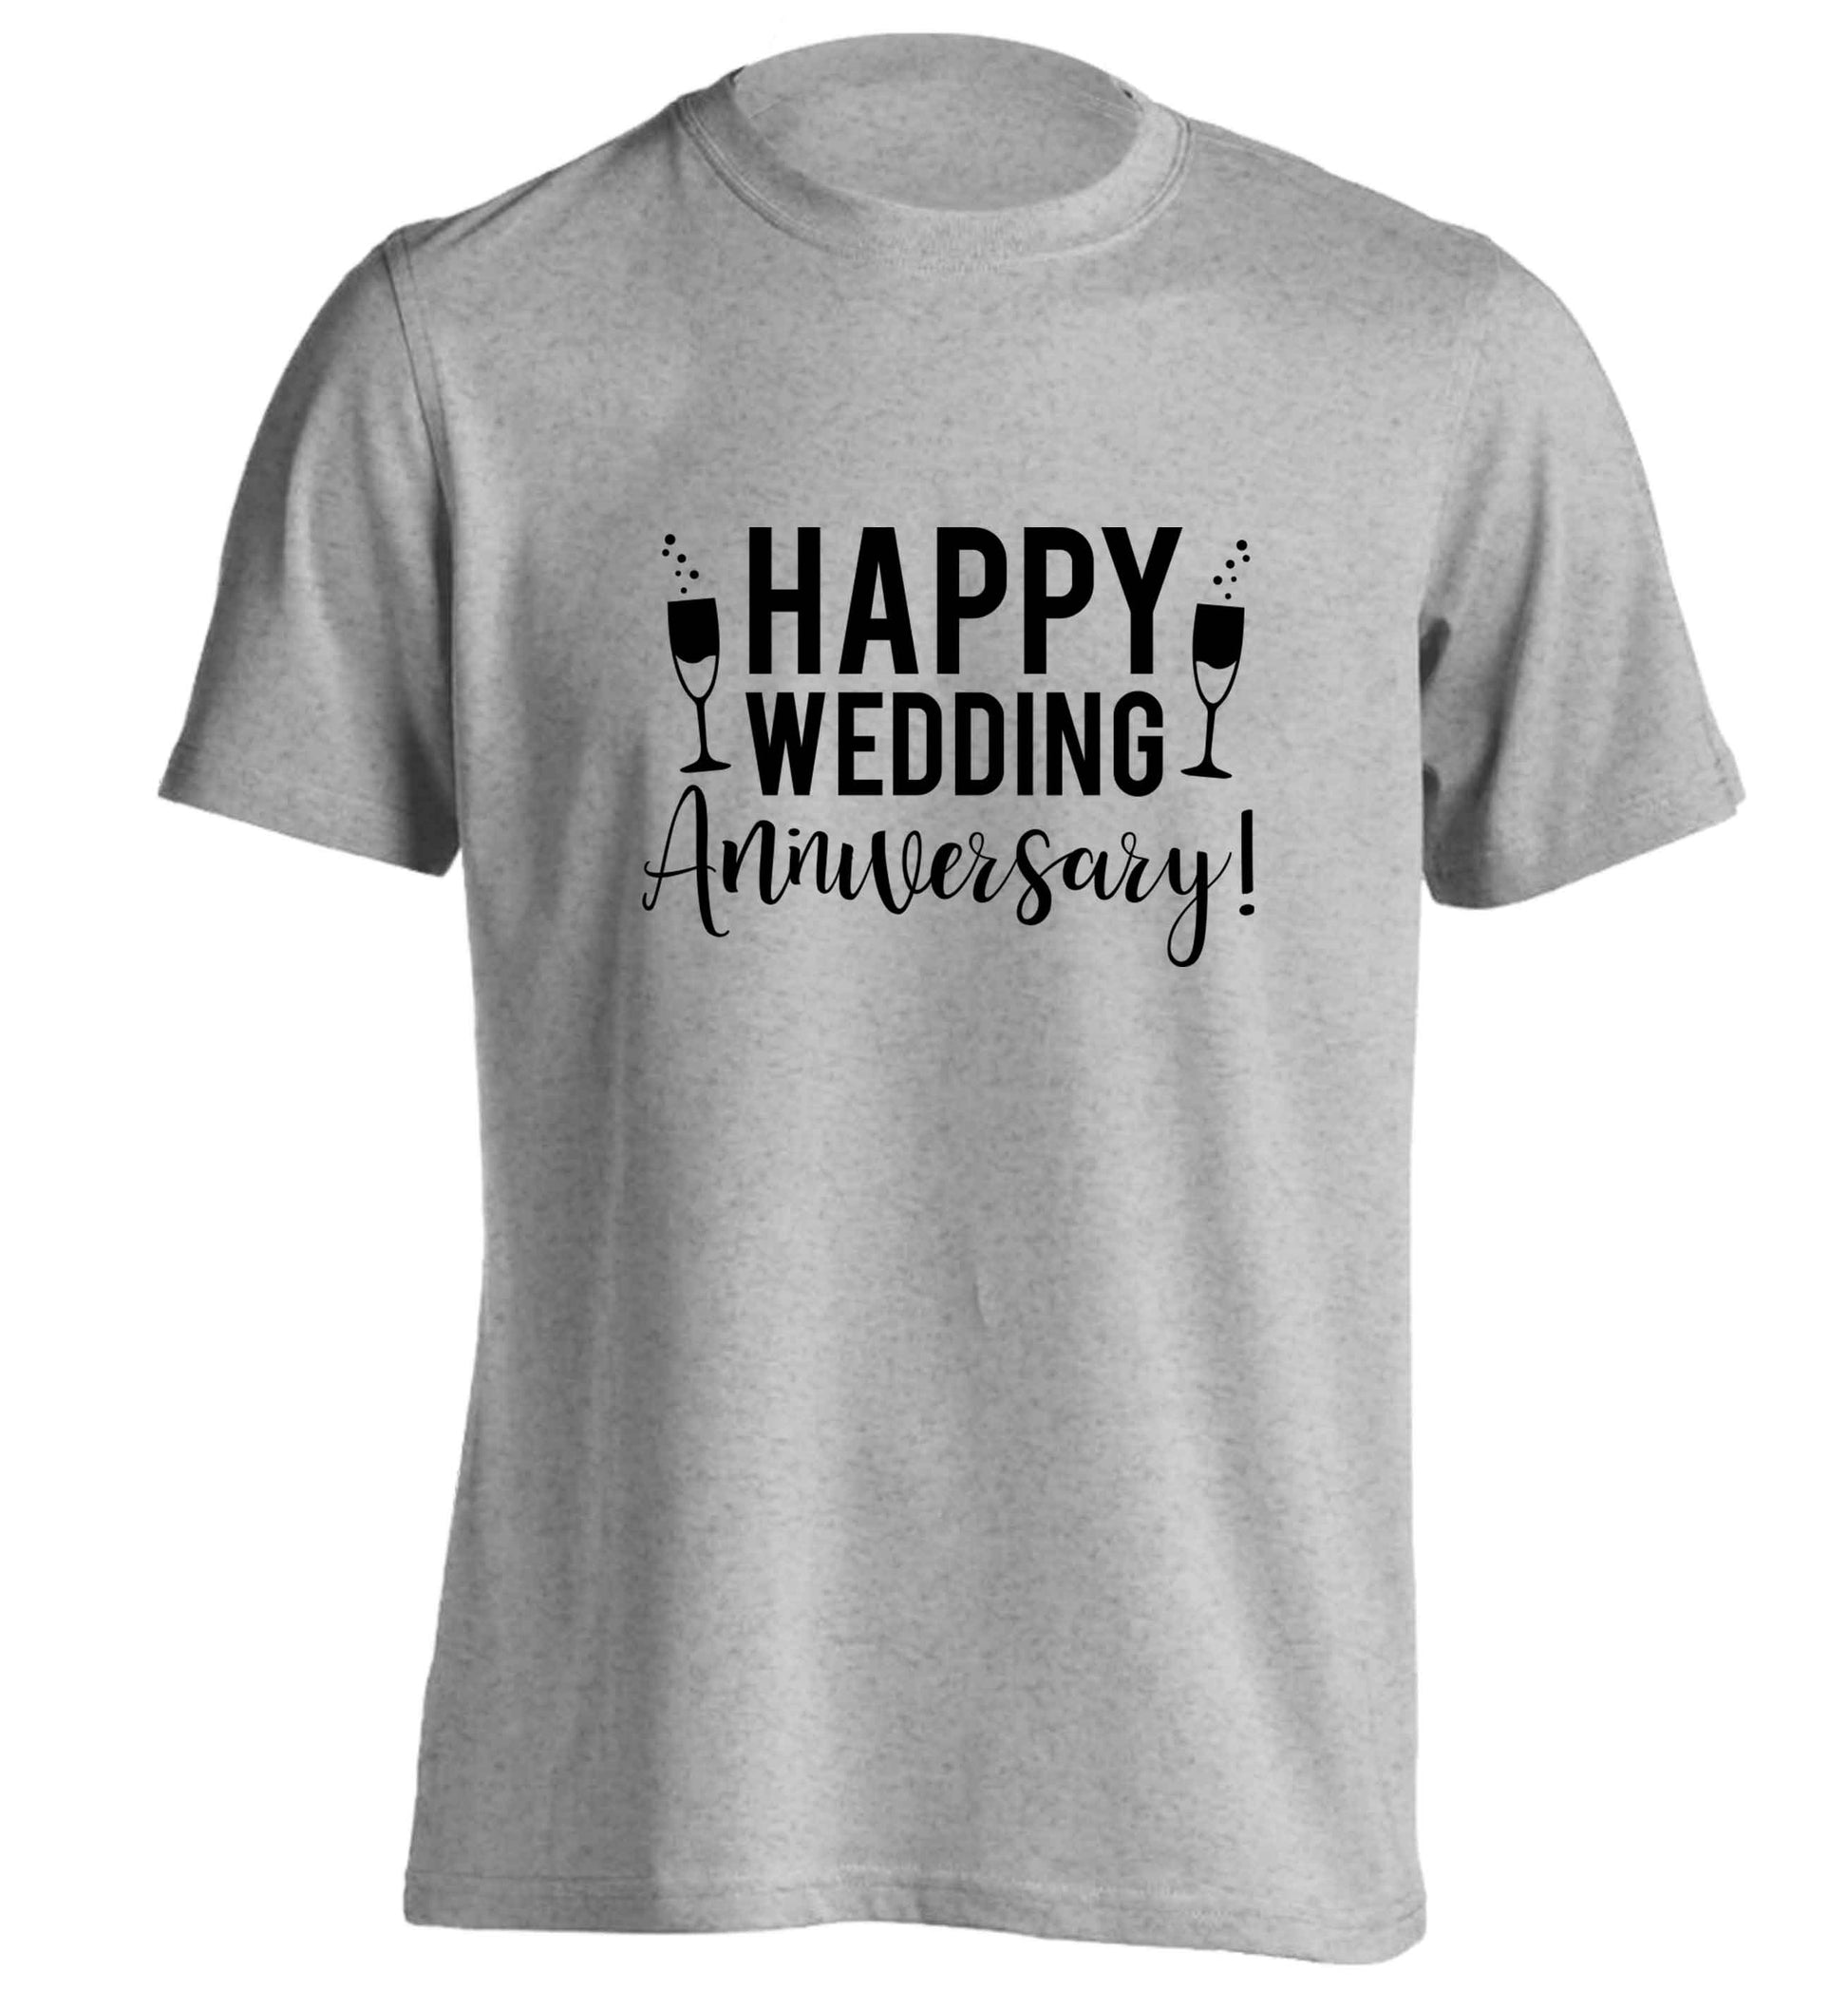 Happy wedding anniversary! adults unisex grey Tshirt 2XL